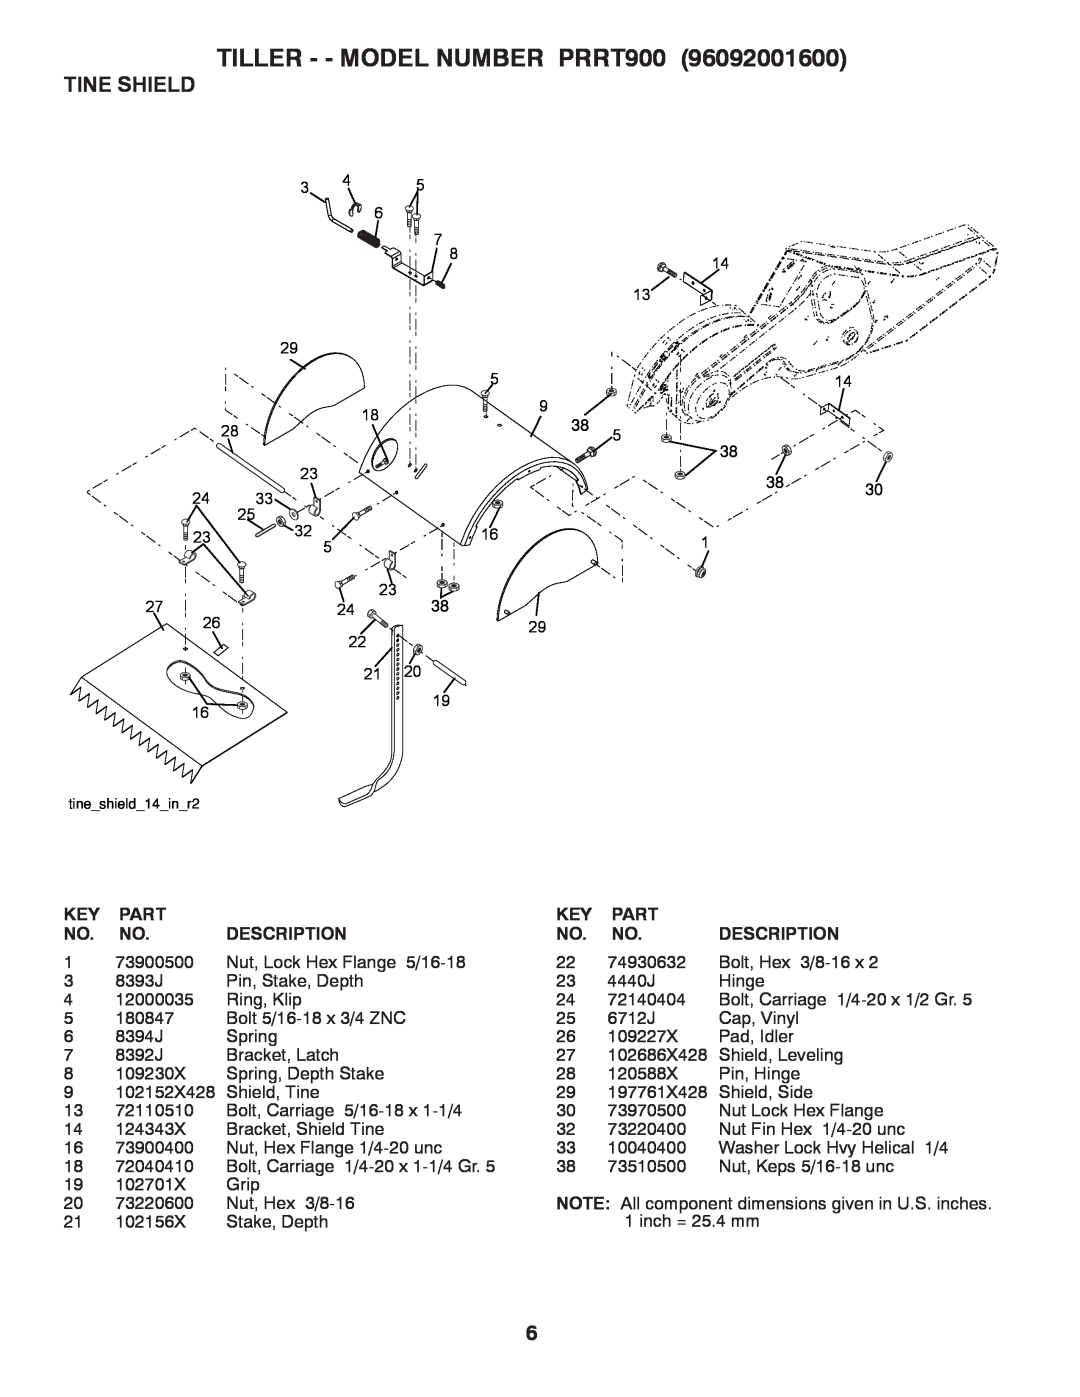 Poulan 96092001600 manual Tine Shield, TILLER - - MODEL NUMBER PRRT900, Part, Description 